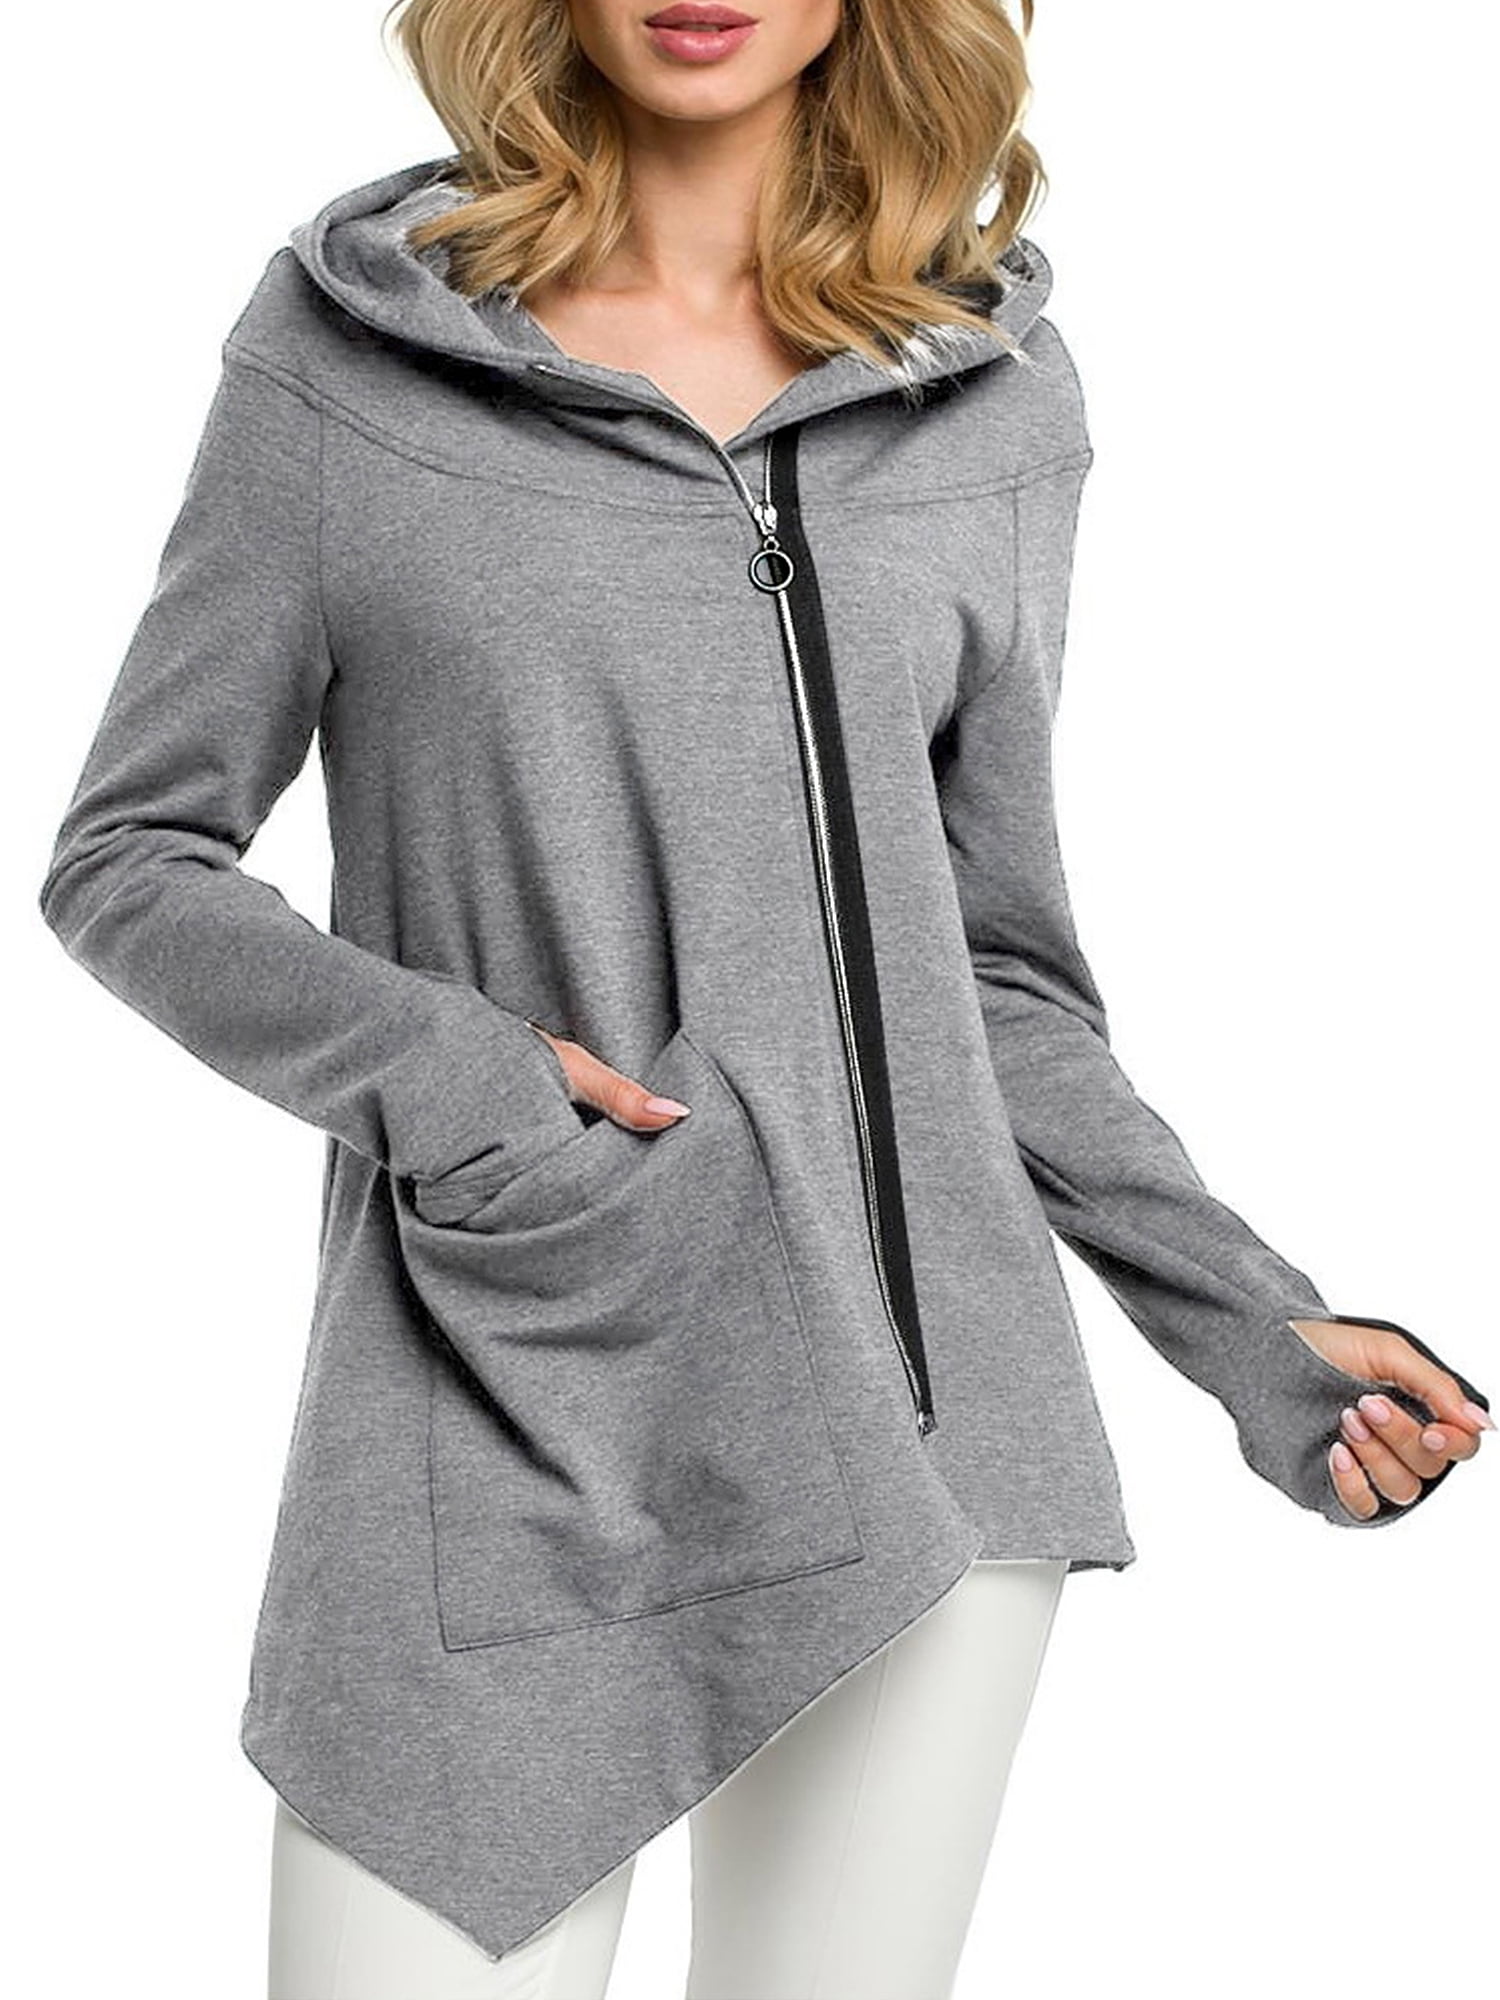 Womens Long Sleeve Hoodies Sweater Pullover Hooded Sweatshirt Coat Jacket Tops 